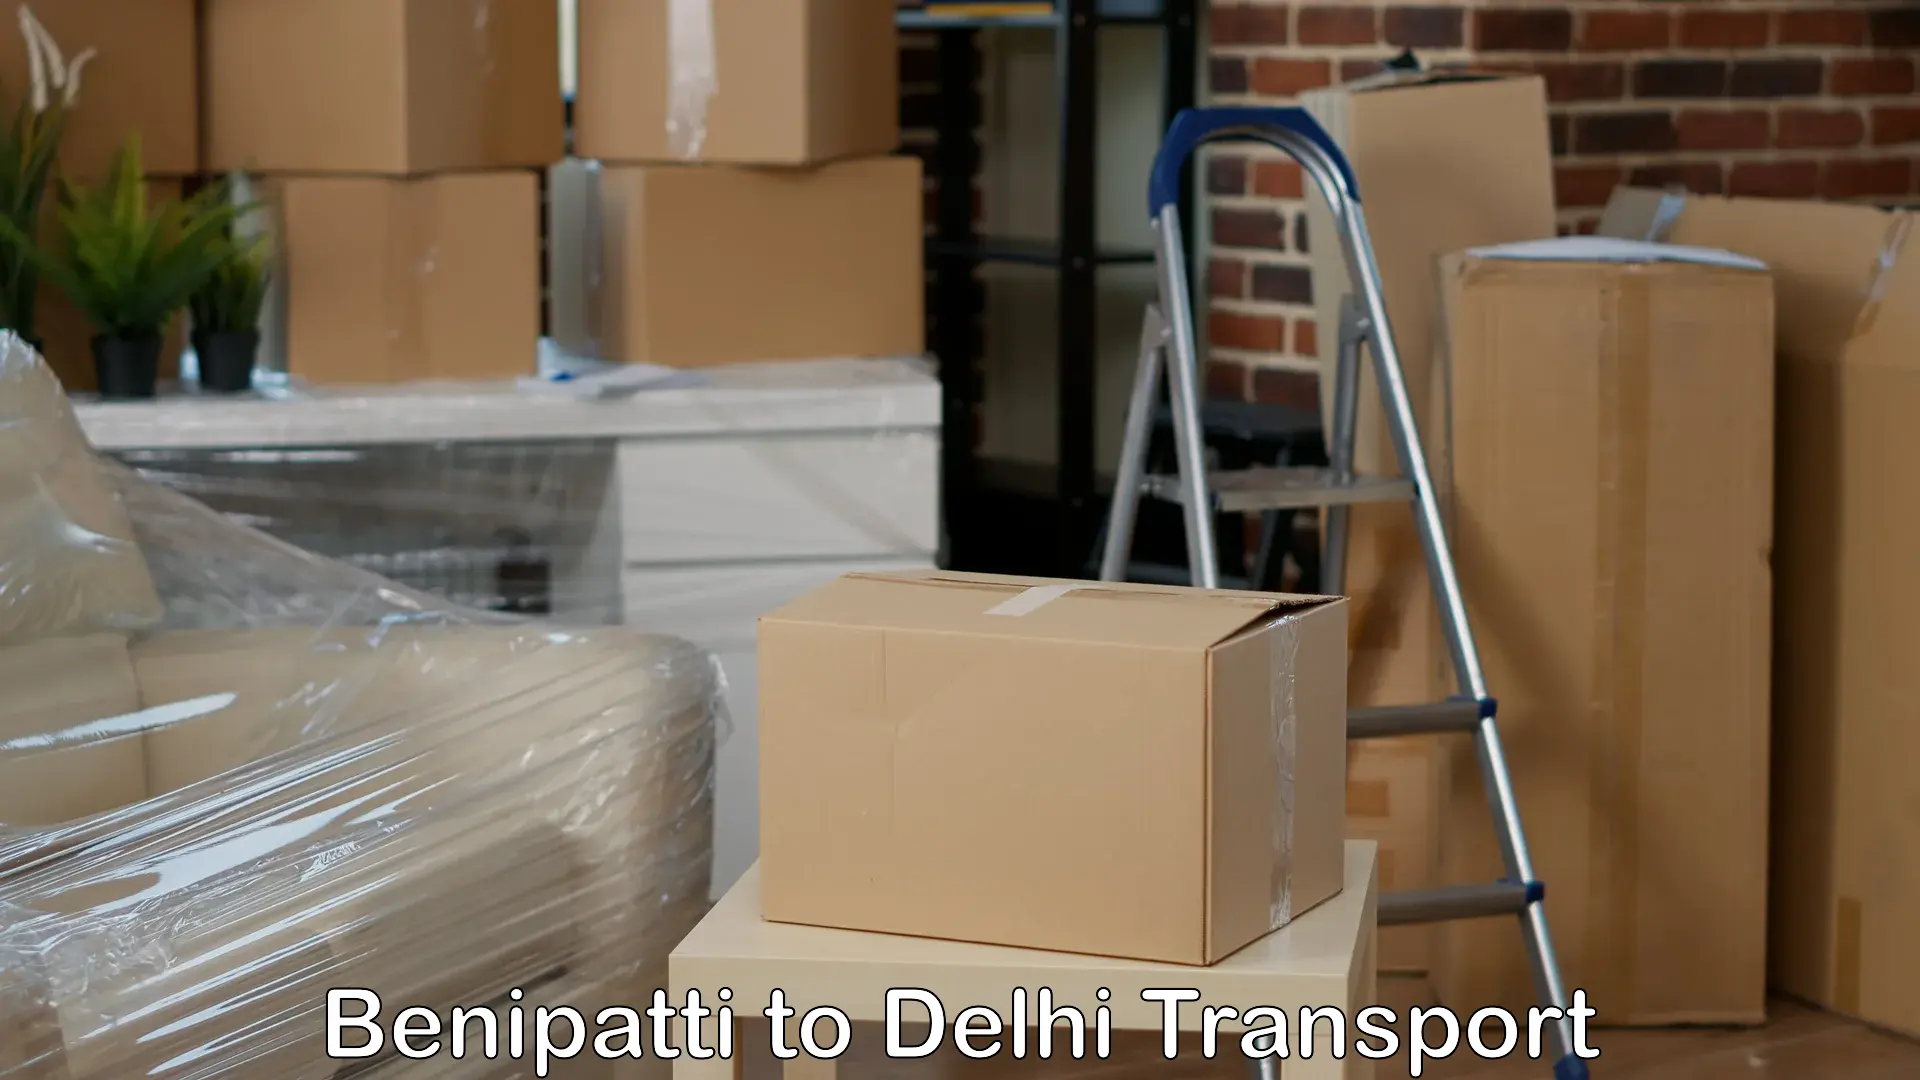 Container transportation services Benipatti to Delhi